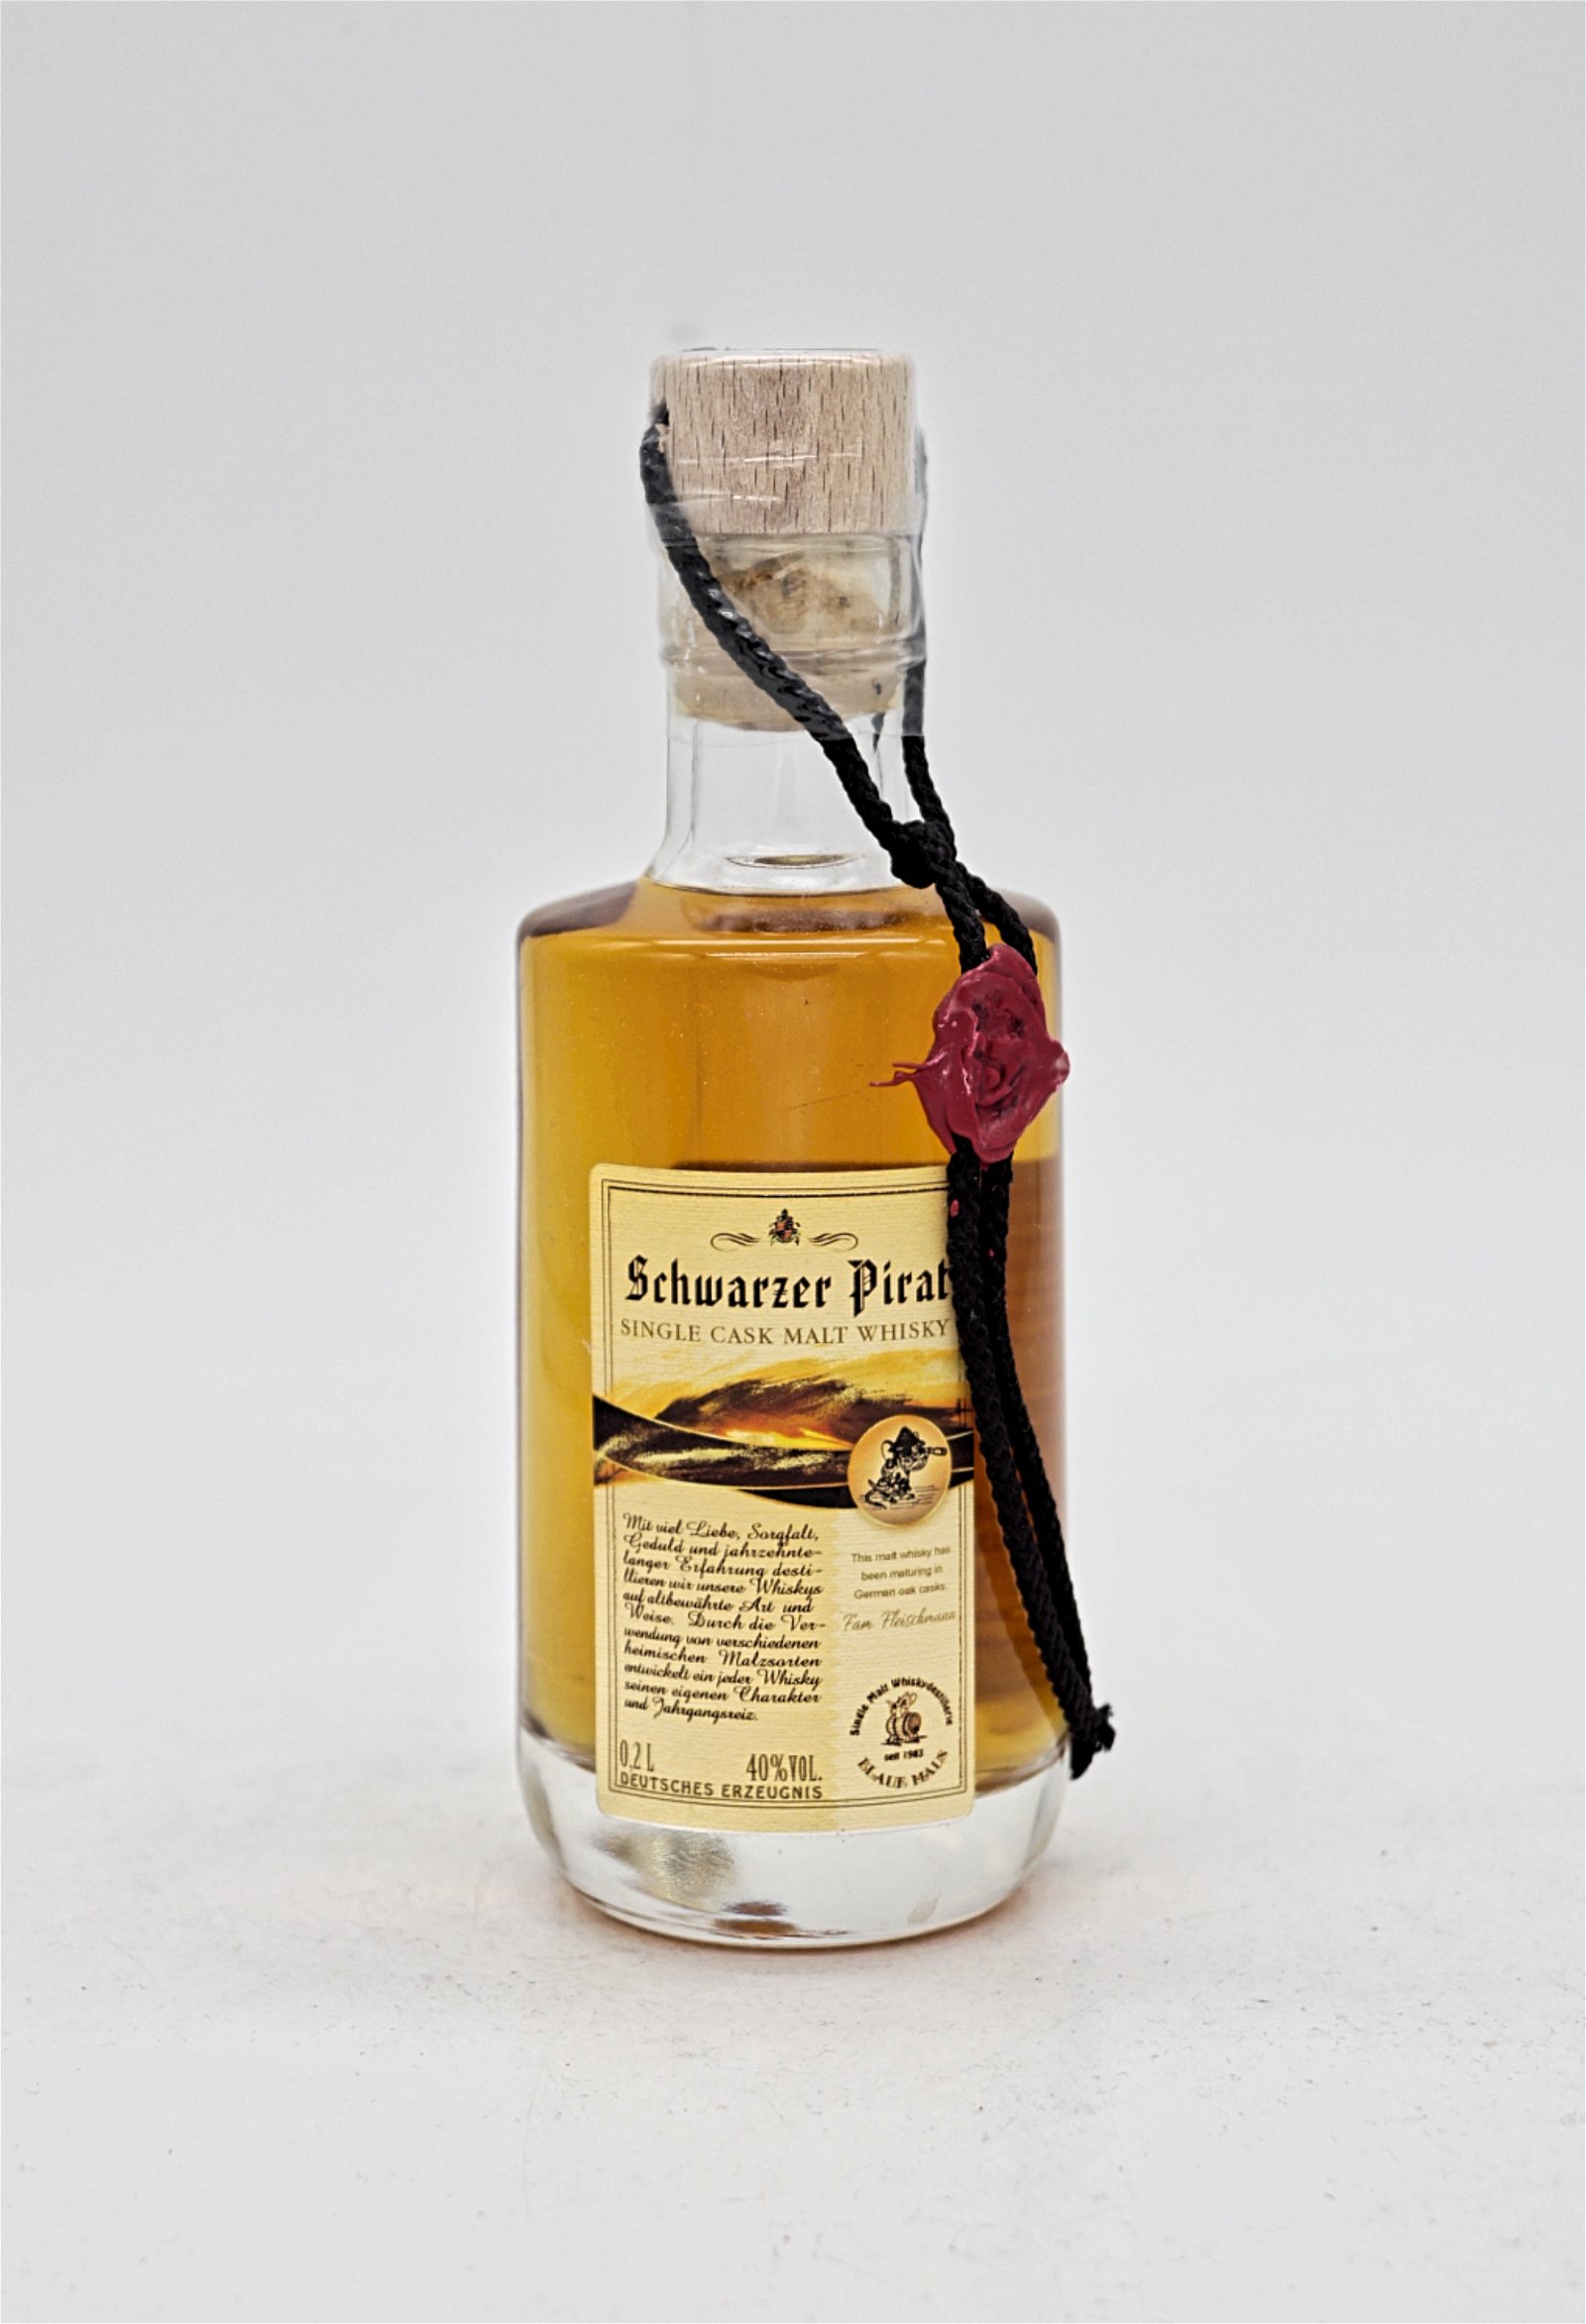 Blaue Maus Schwarzer Pirat Single Cask Malt Whisky 2010/2018